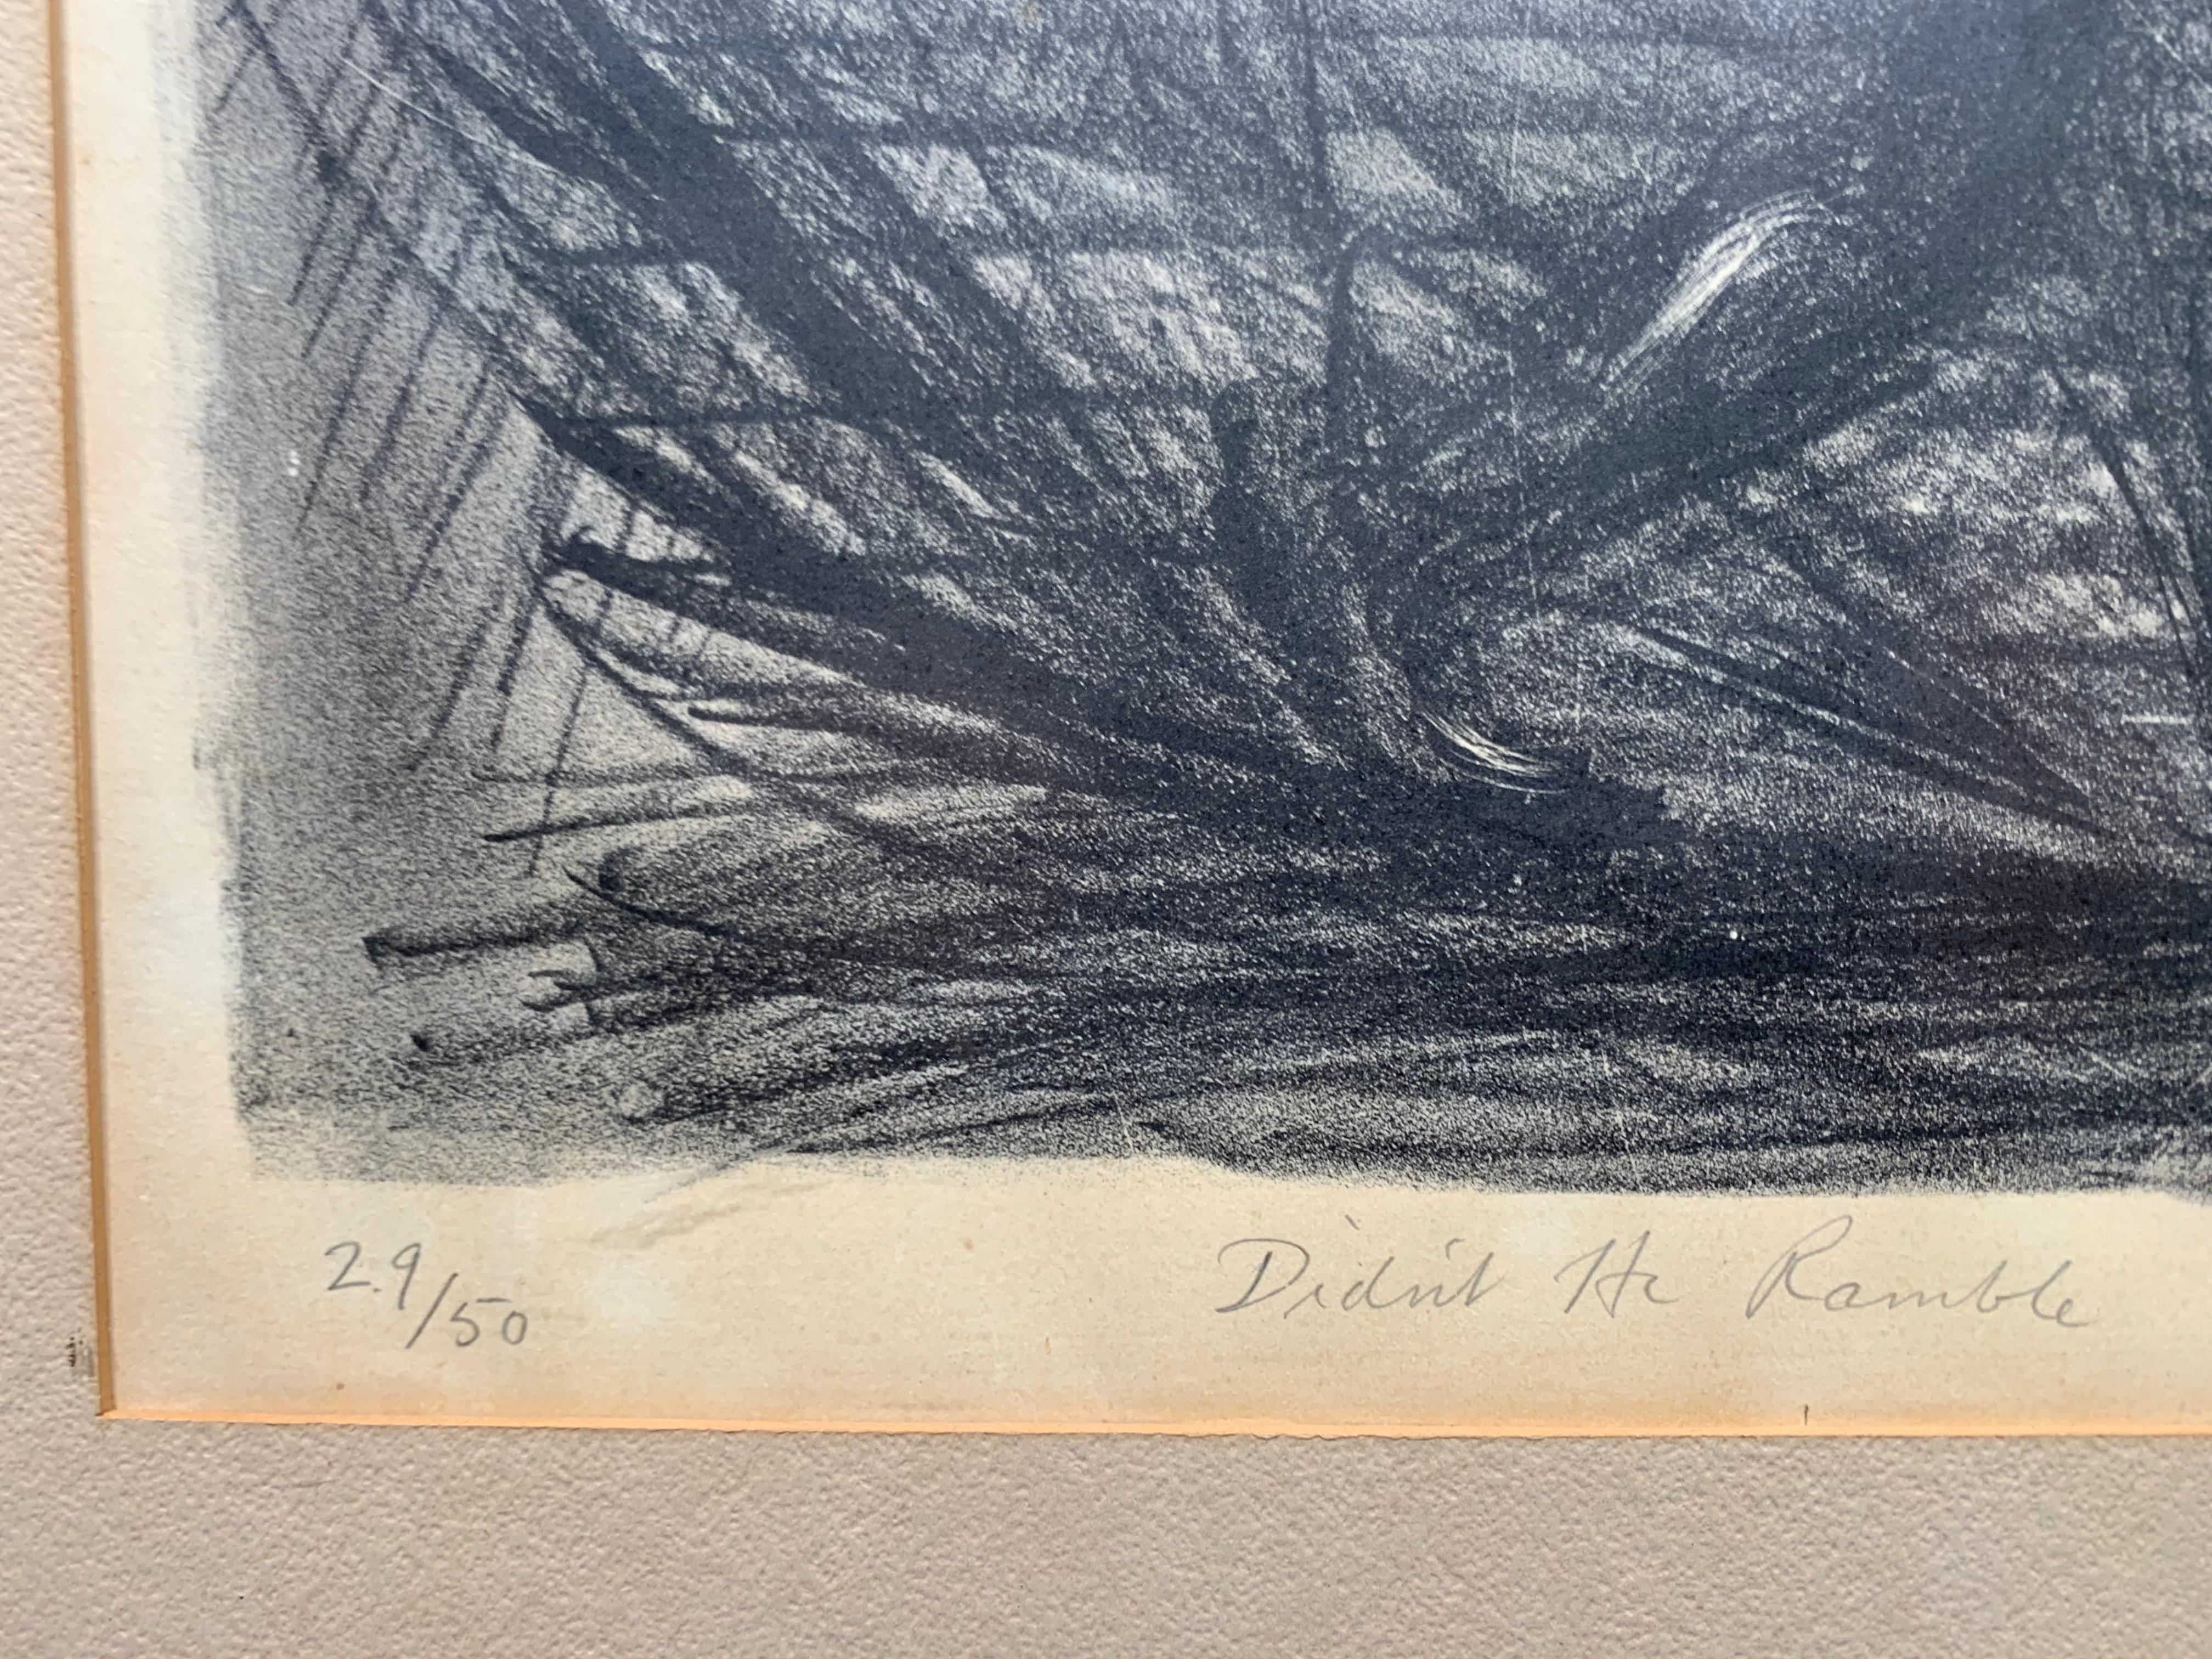 Whitford Carter (1915-1973). Didn't He Ramble?, 1964. Lithographie auf Papier, Bild misst 13 x 17 Zoll; 19 x 22 Zoll im Originalrahmen. Signiert, datiert, nummeriert und betitelt vom Künstler mit Bleistift am unteren Rand. 